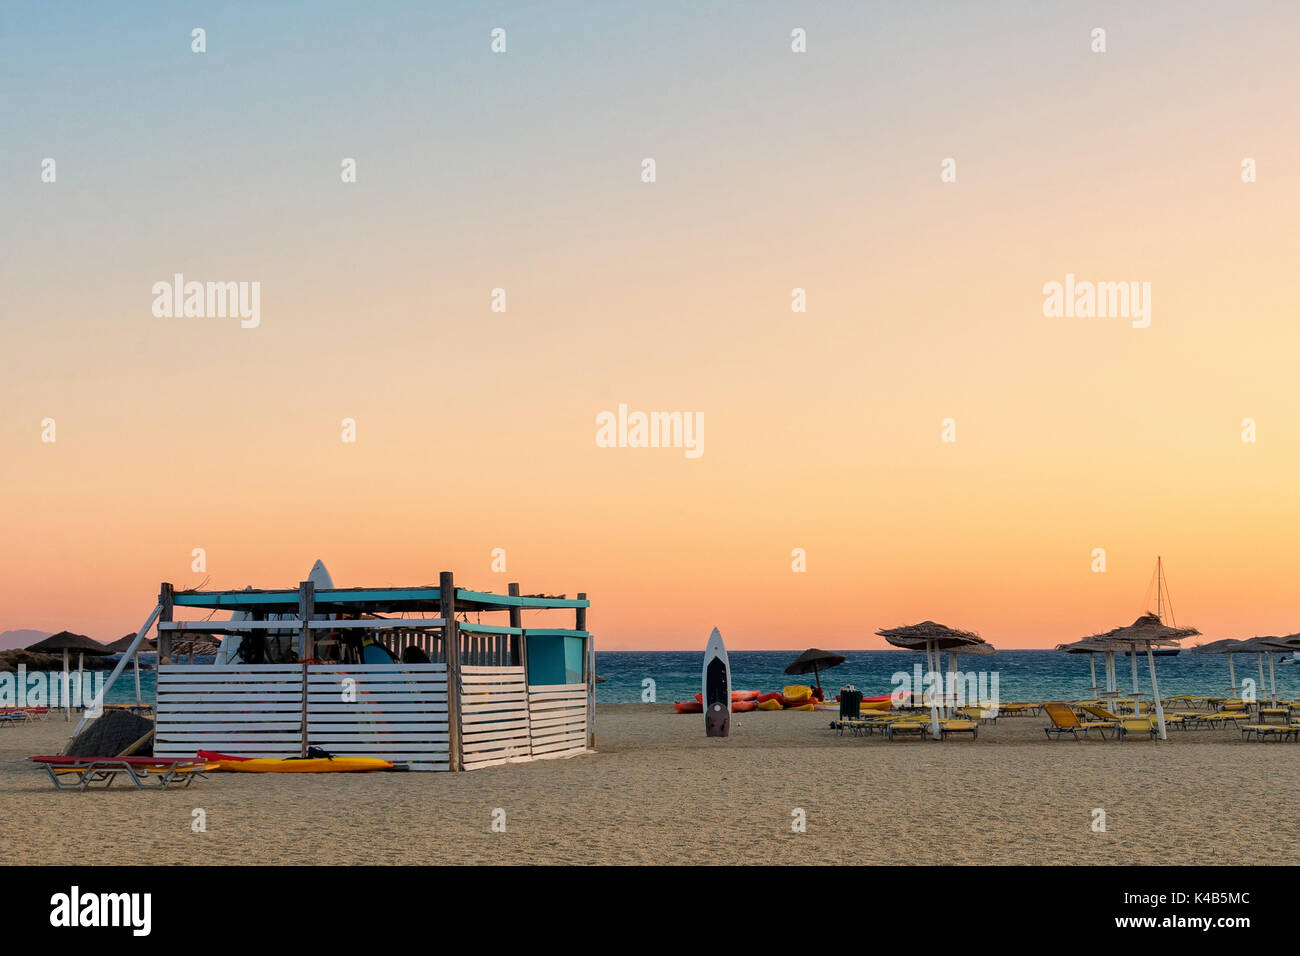 Ende der Sommerferien, eine geschlossene boathouse auf Manganari Strand, Insel Ios, Griechenland. Stockfoto